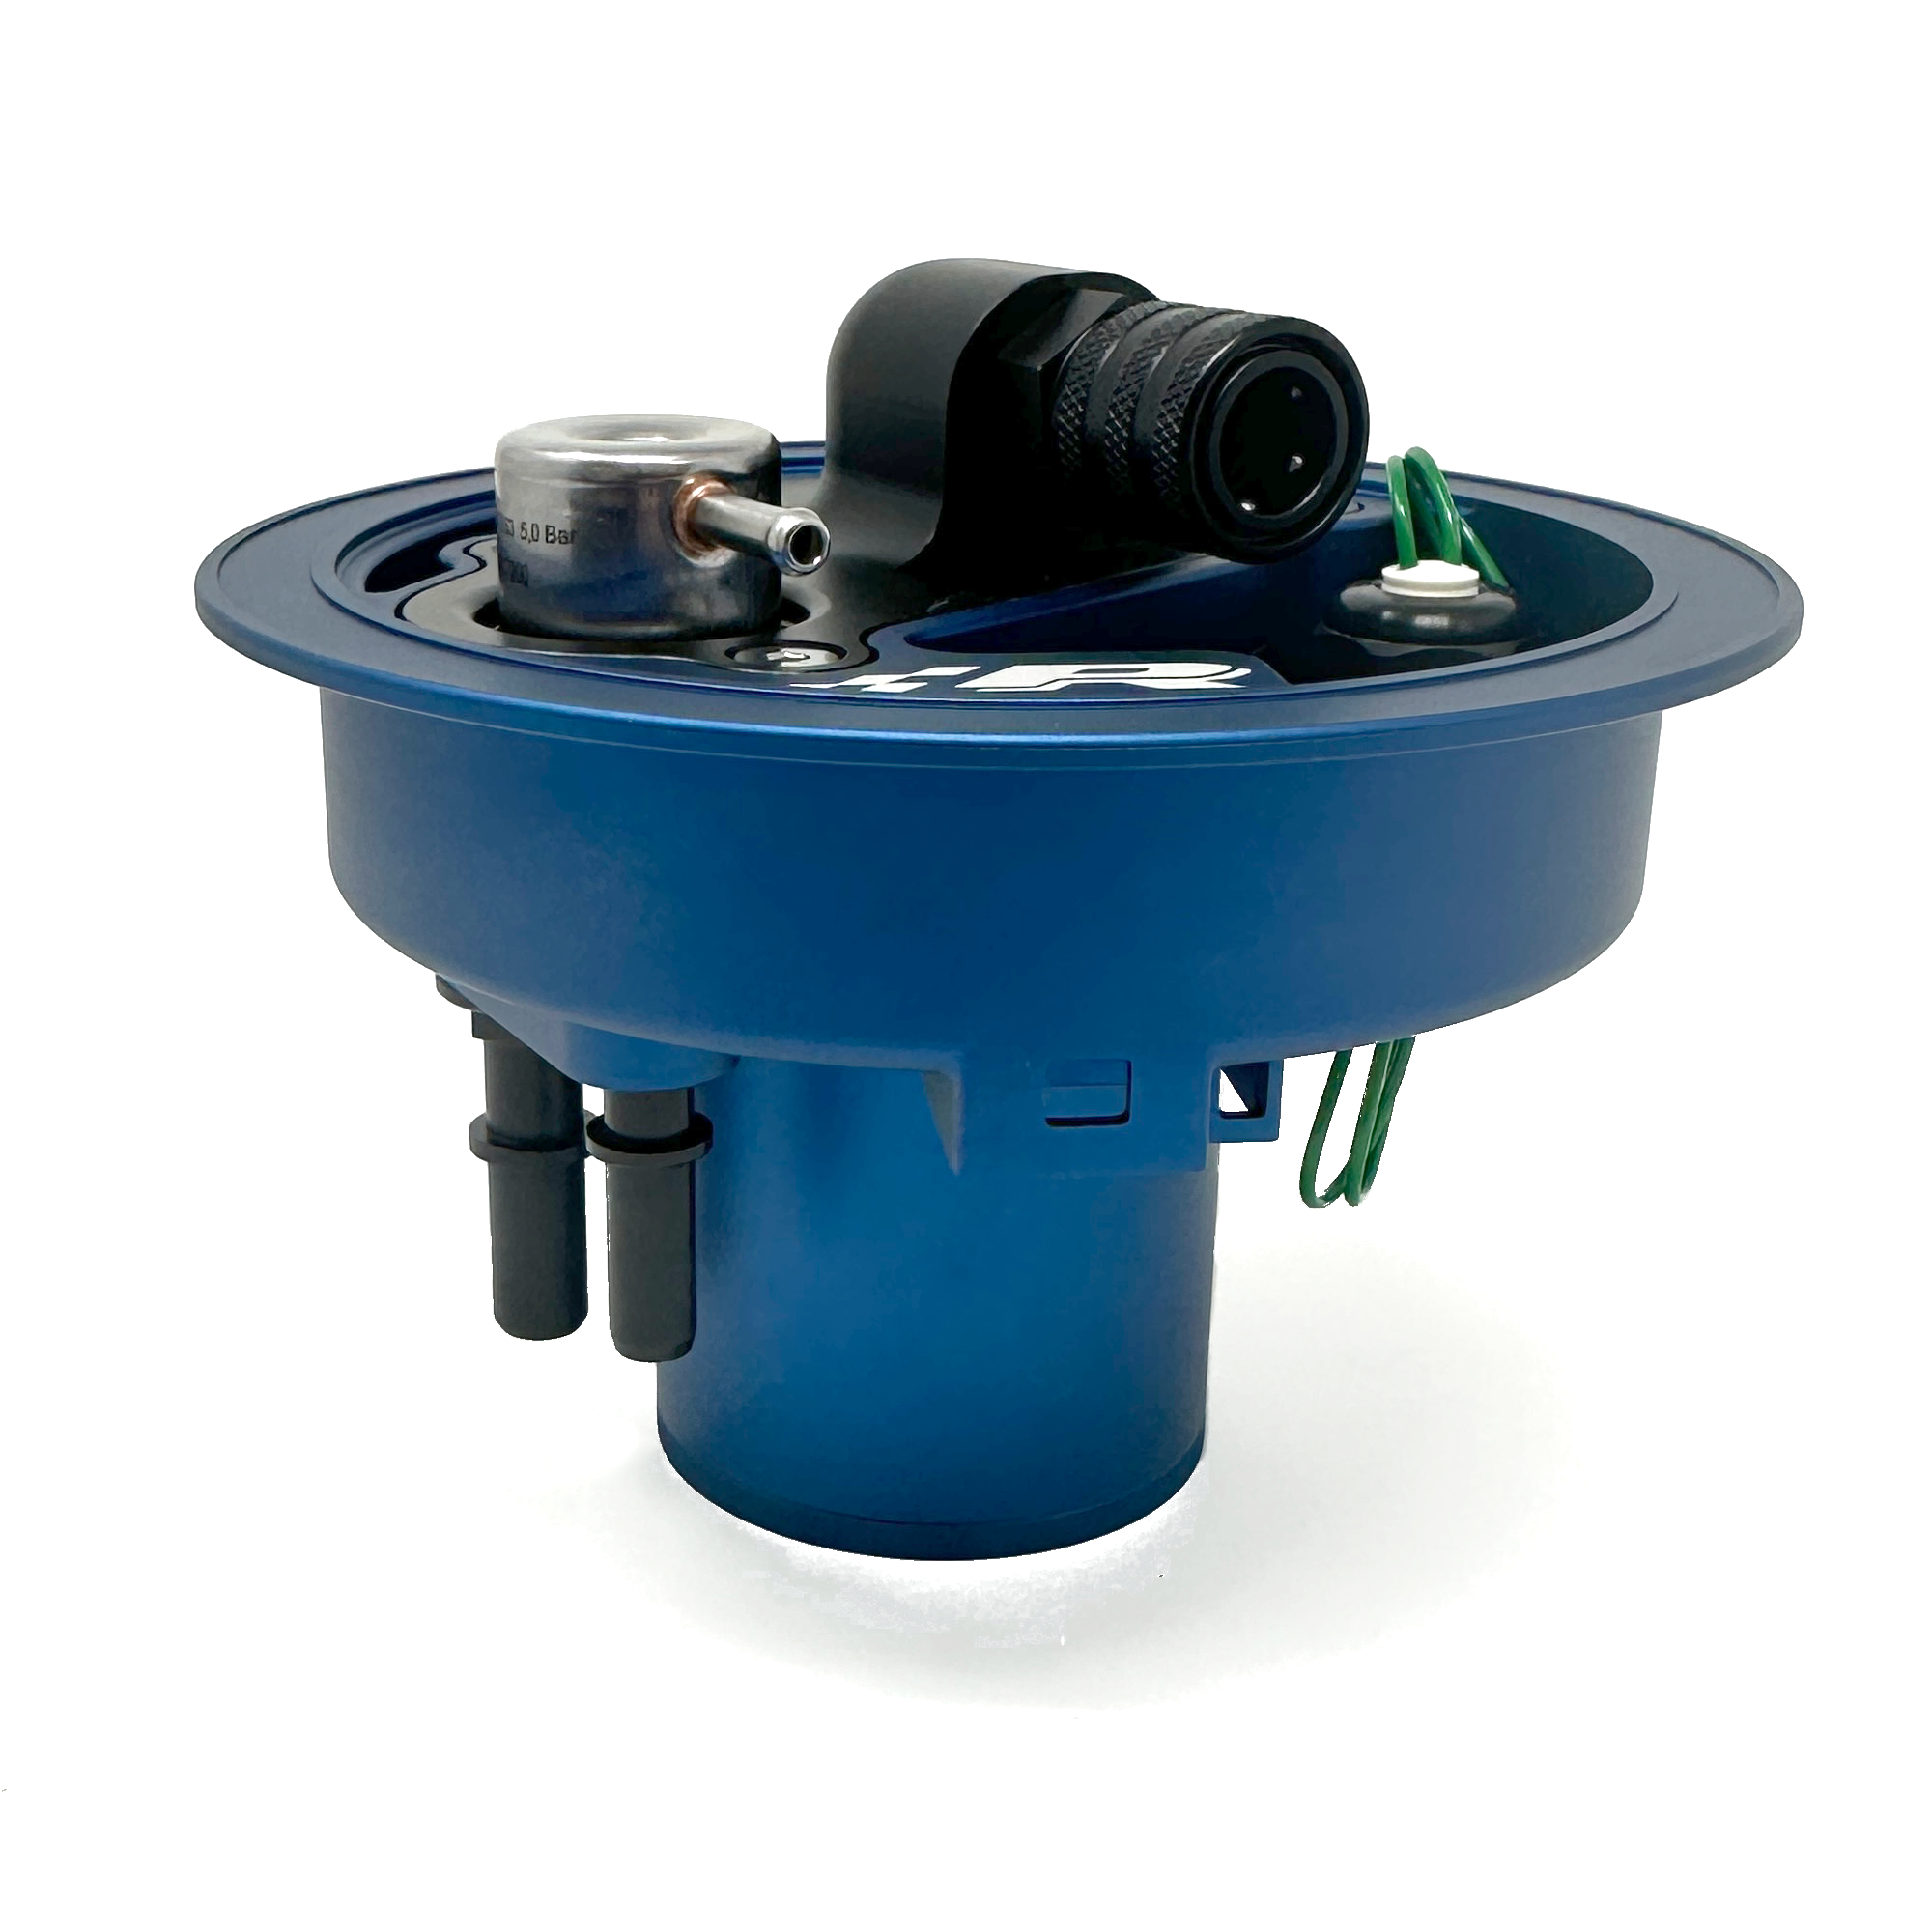 Adaptor Kit for German Pressure Regulator Euro Kit for Gas Bottle :  : Garden